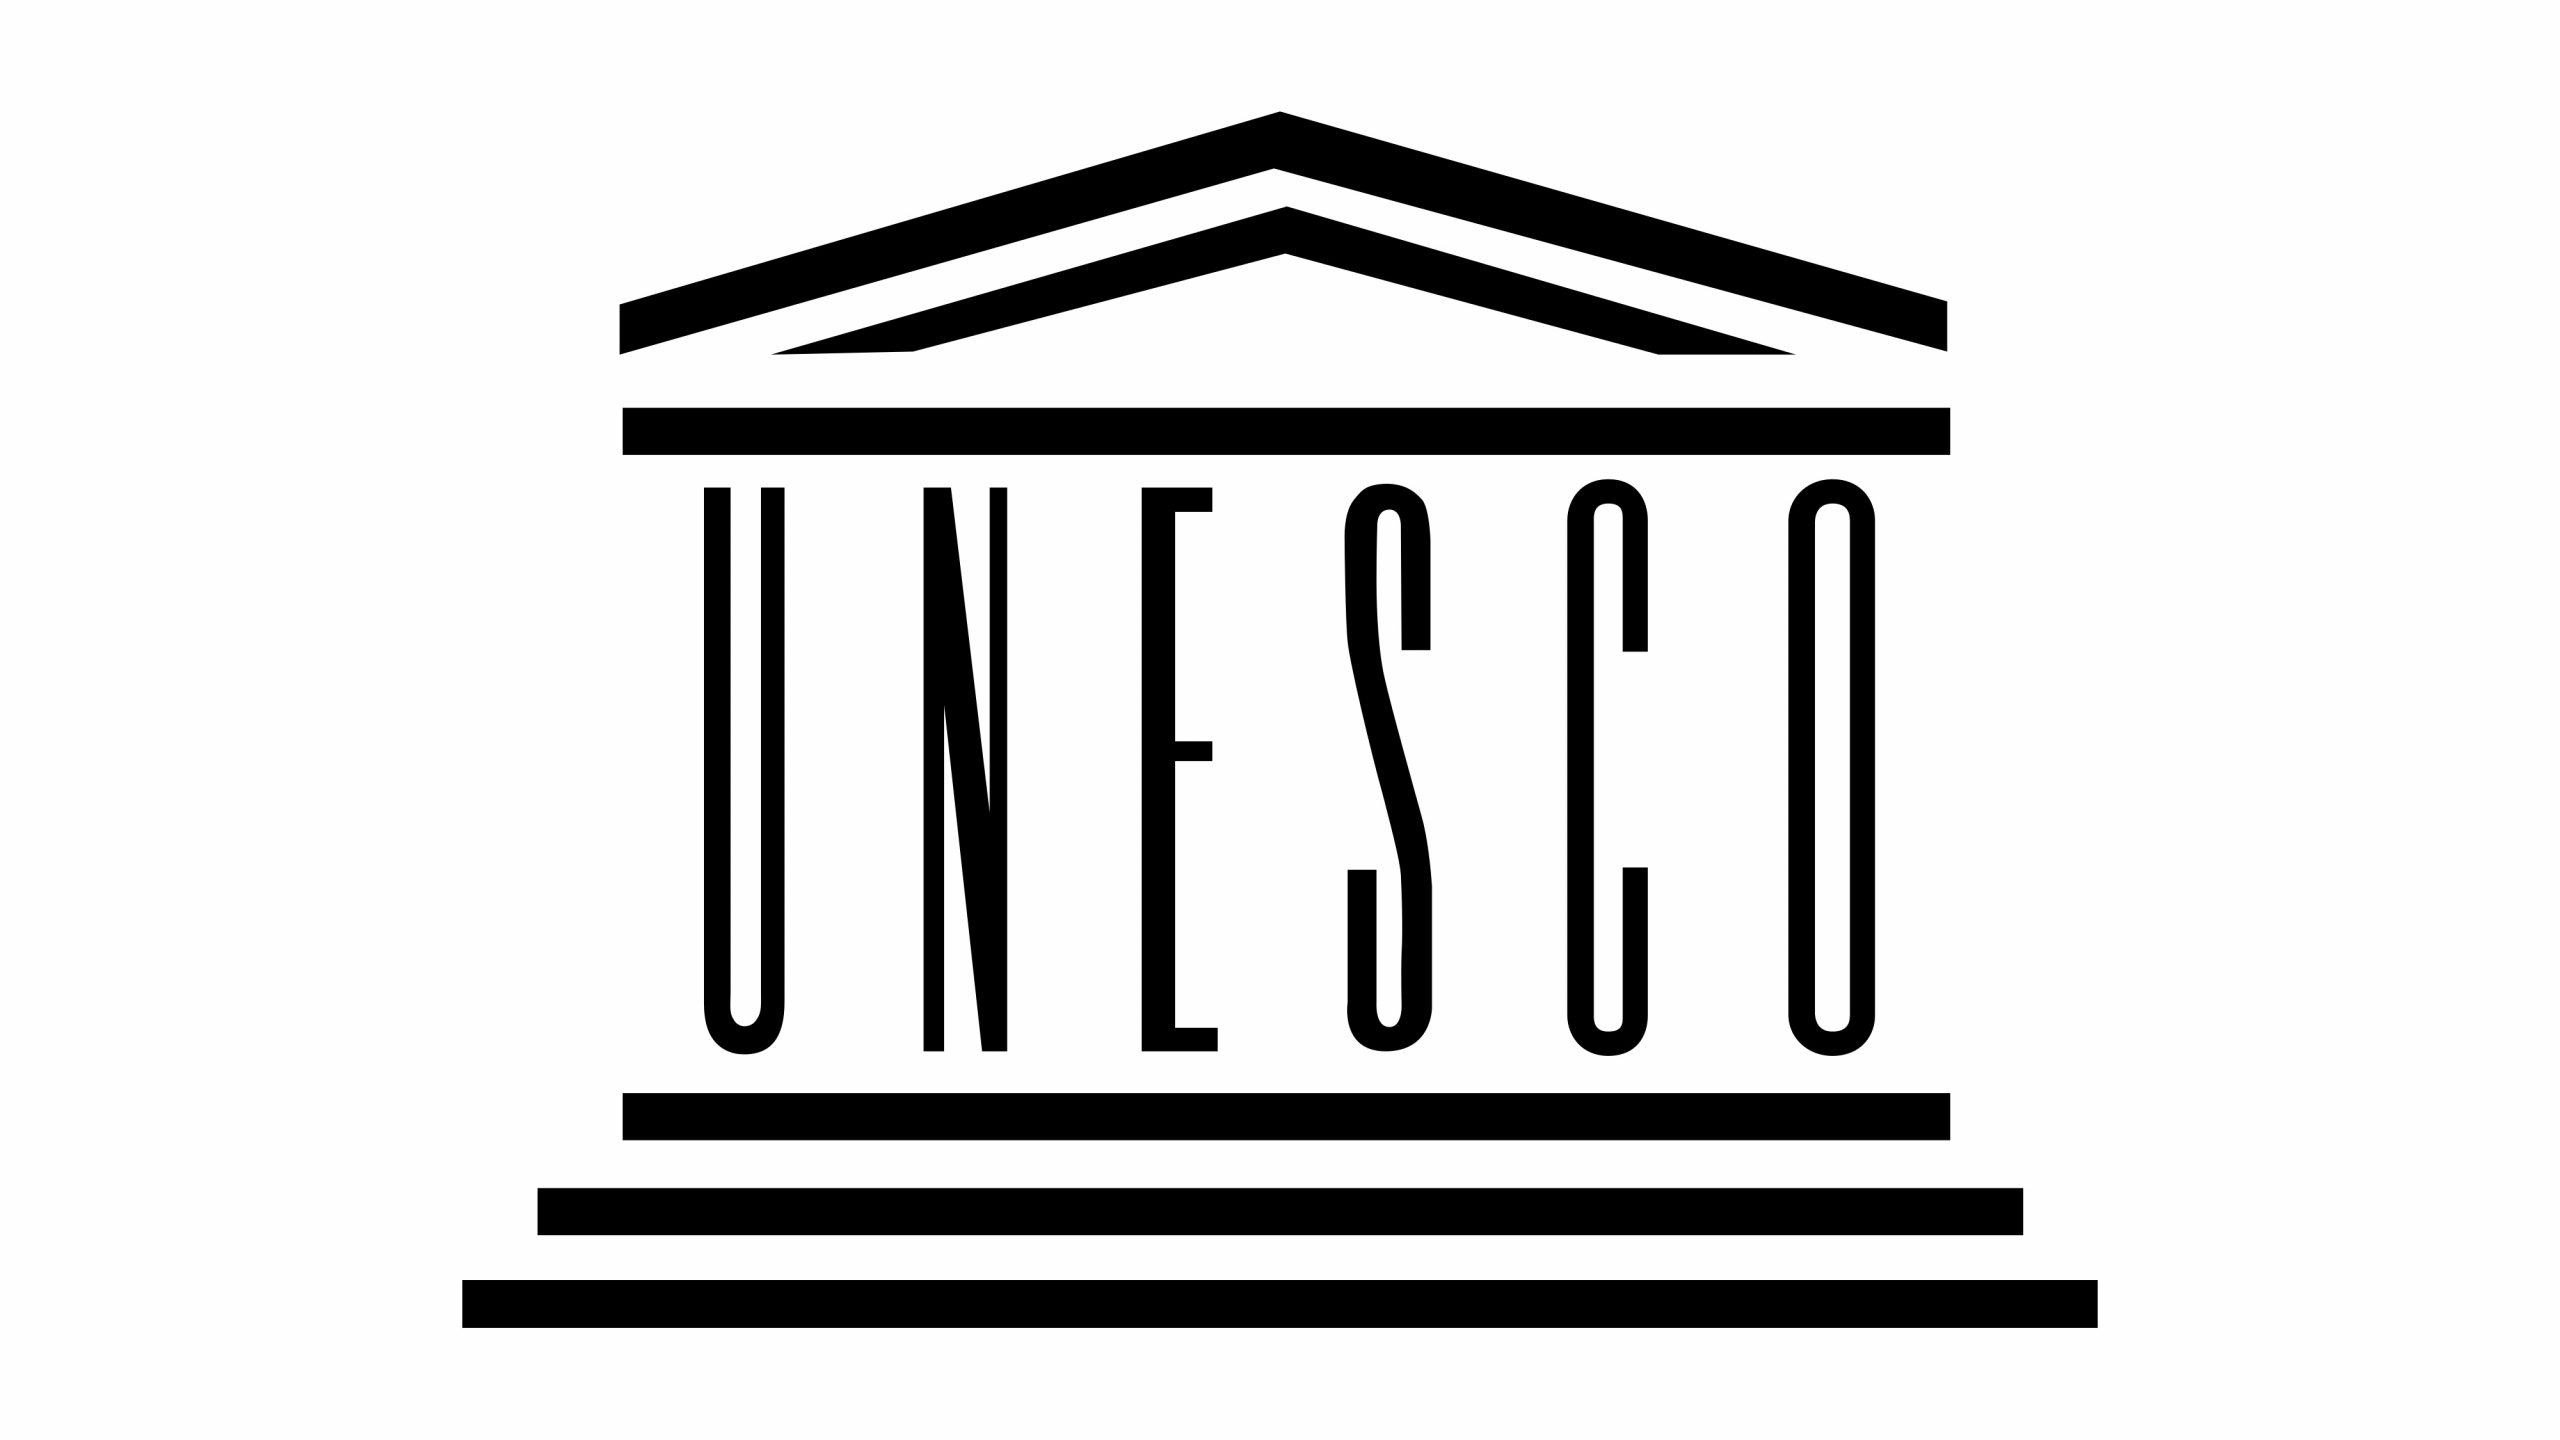 Avvio procedura di riconoscimento UNESCO